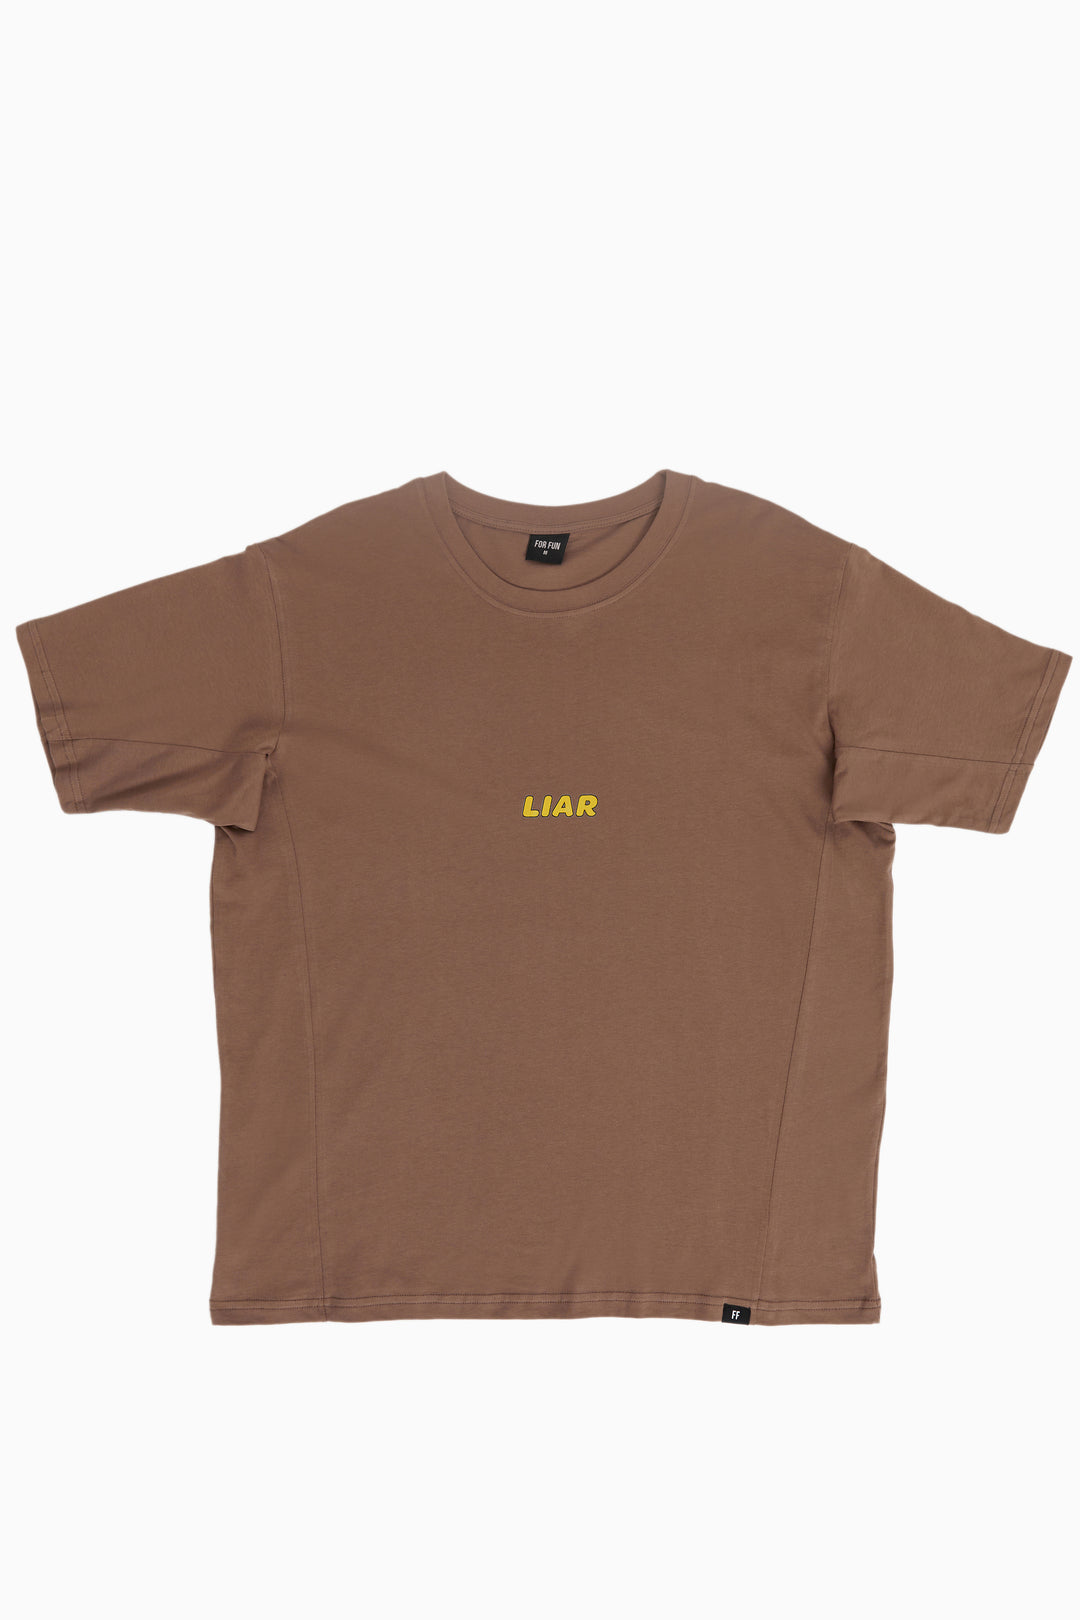 Liar / Oversize T-shirt